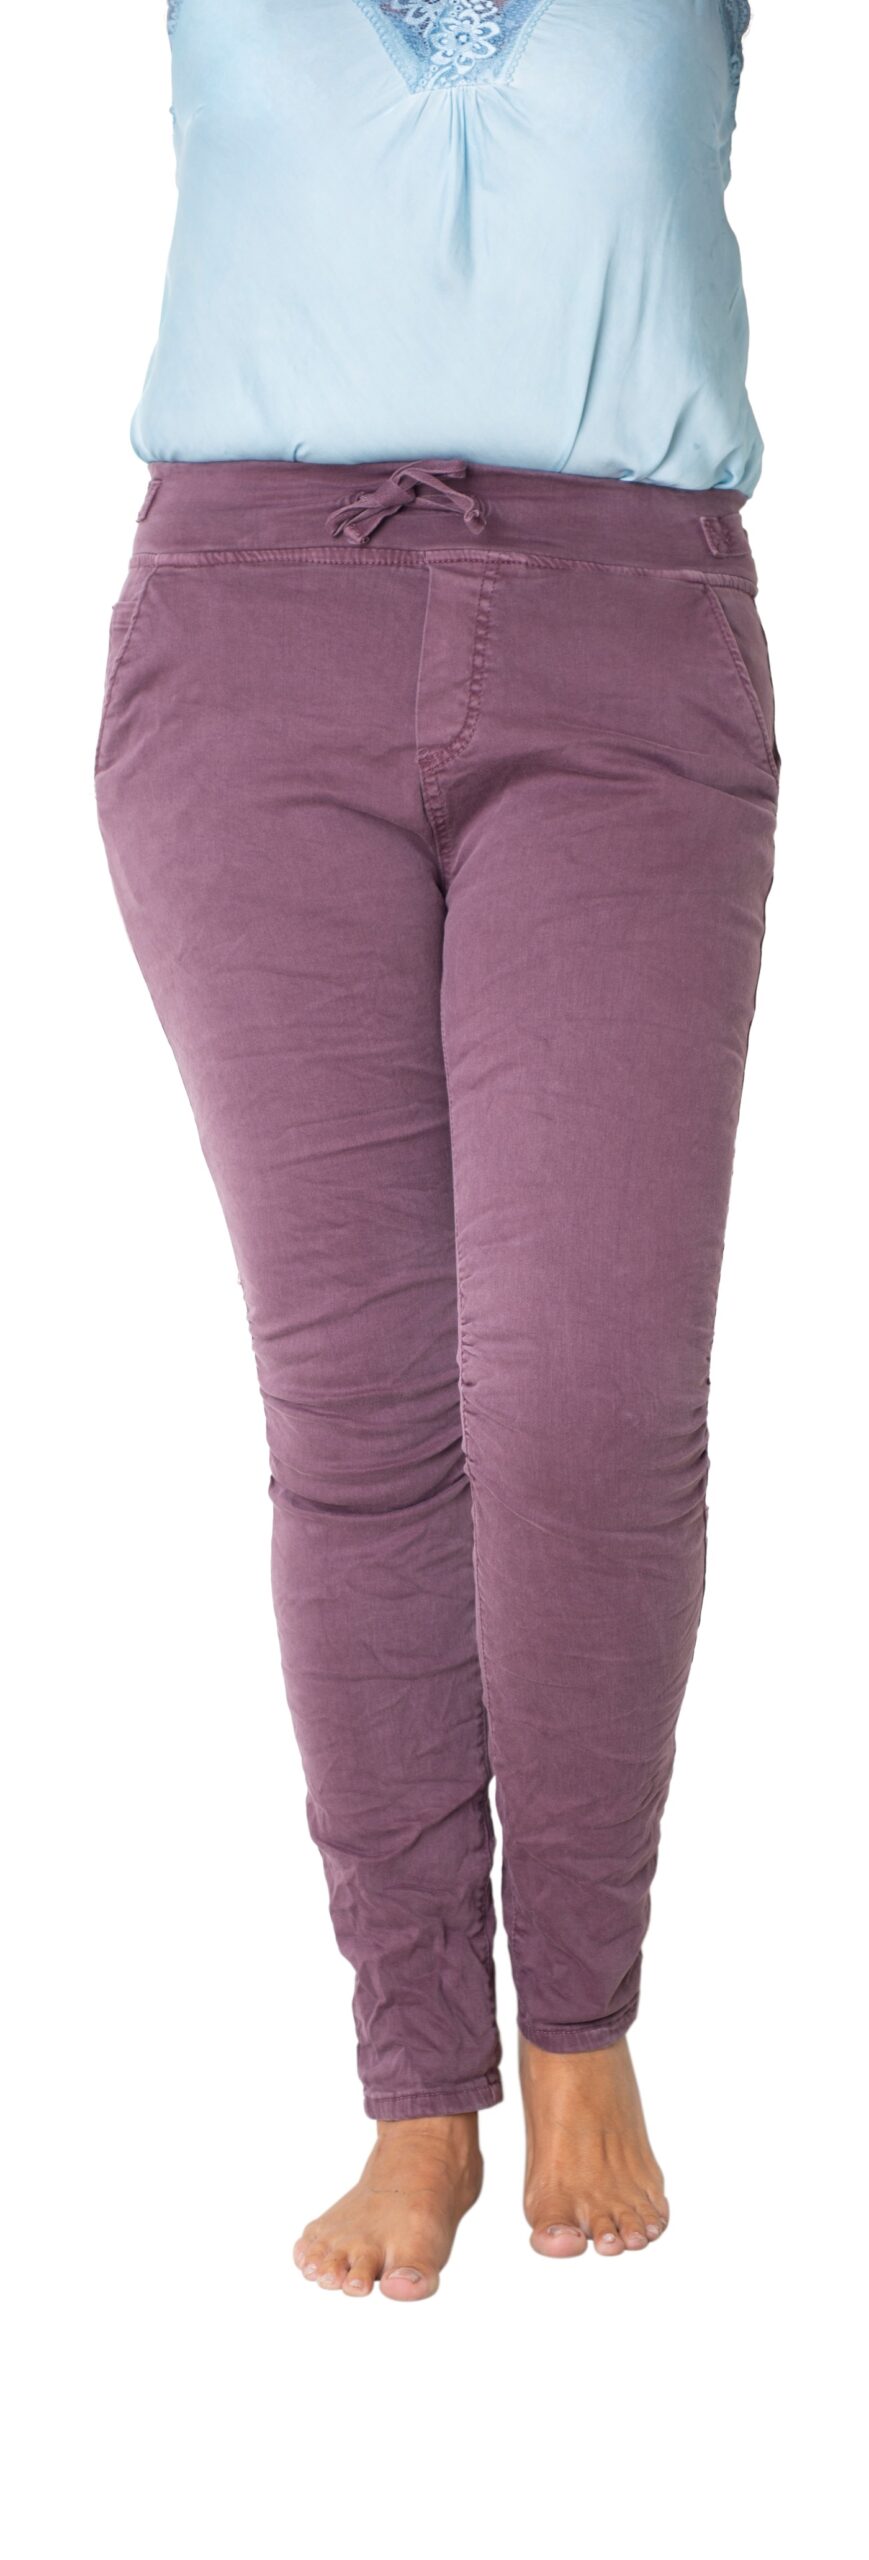 blommefarvede bukser K design - Elegant og smart